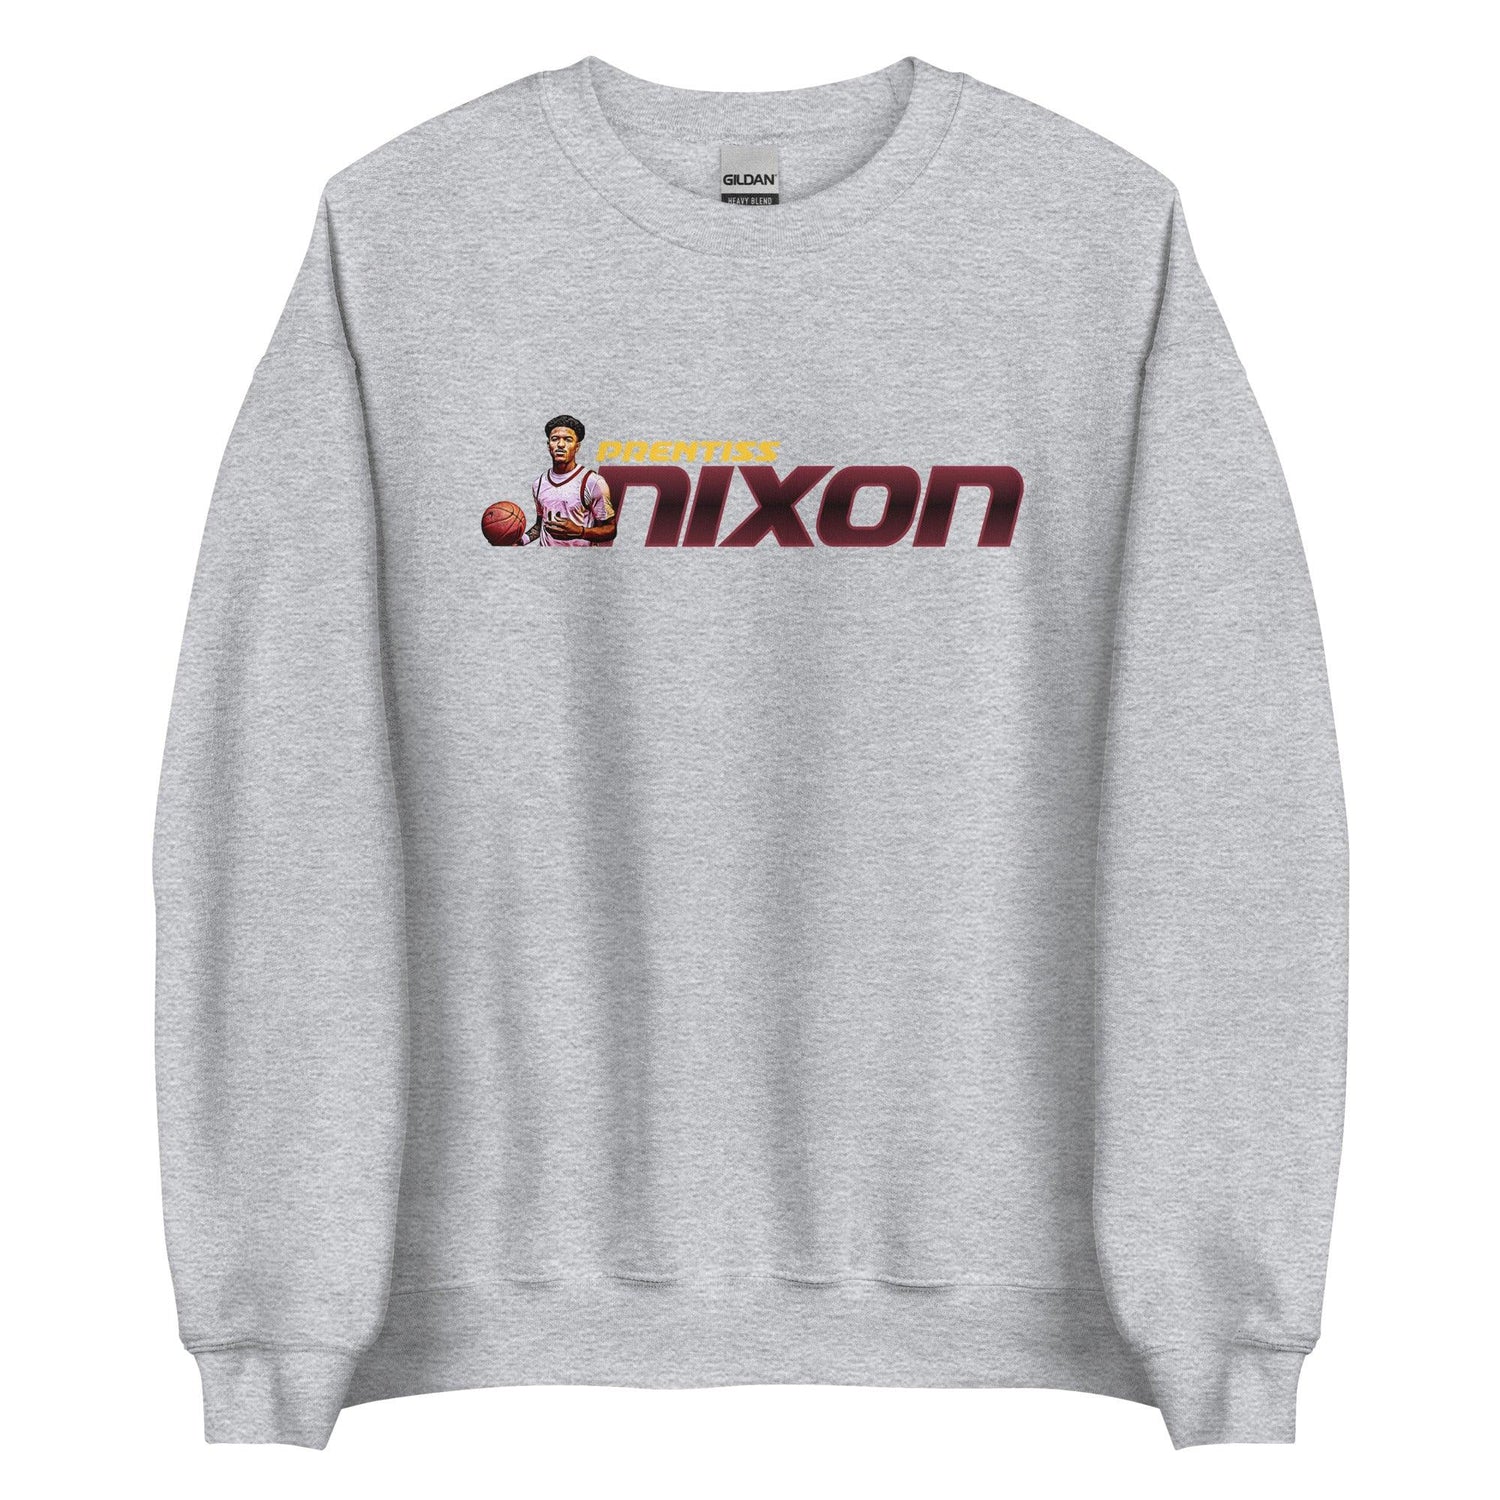 Prentiss Nixon “Essential” Sweatshirt - Fan Arch